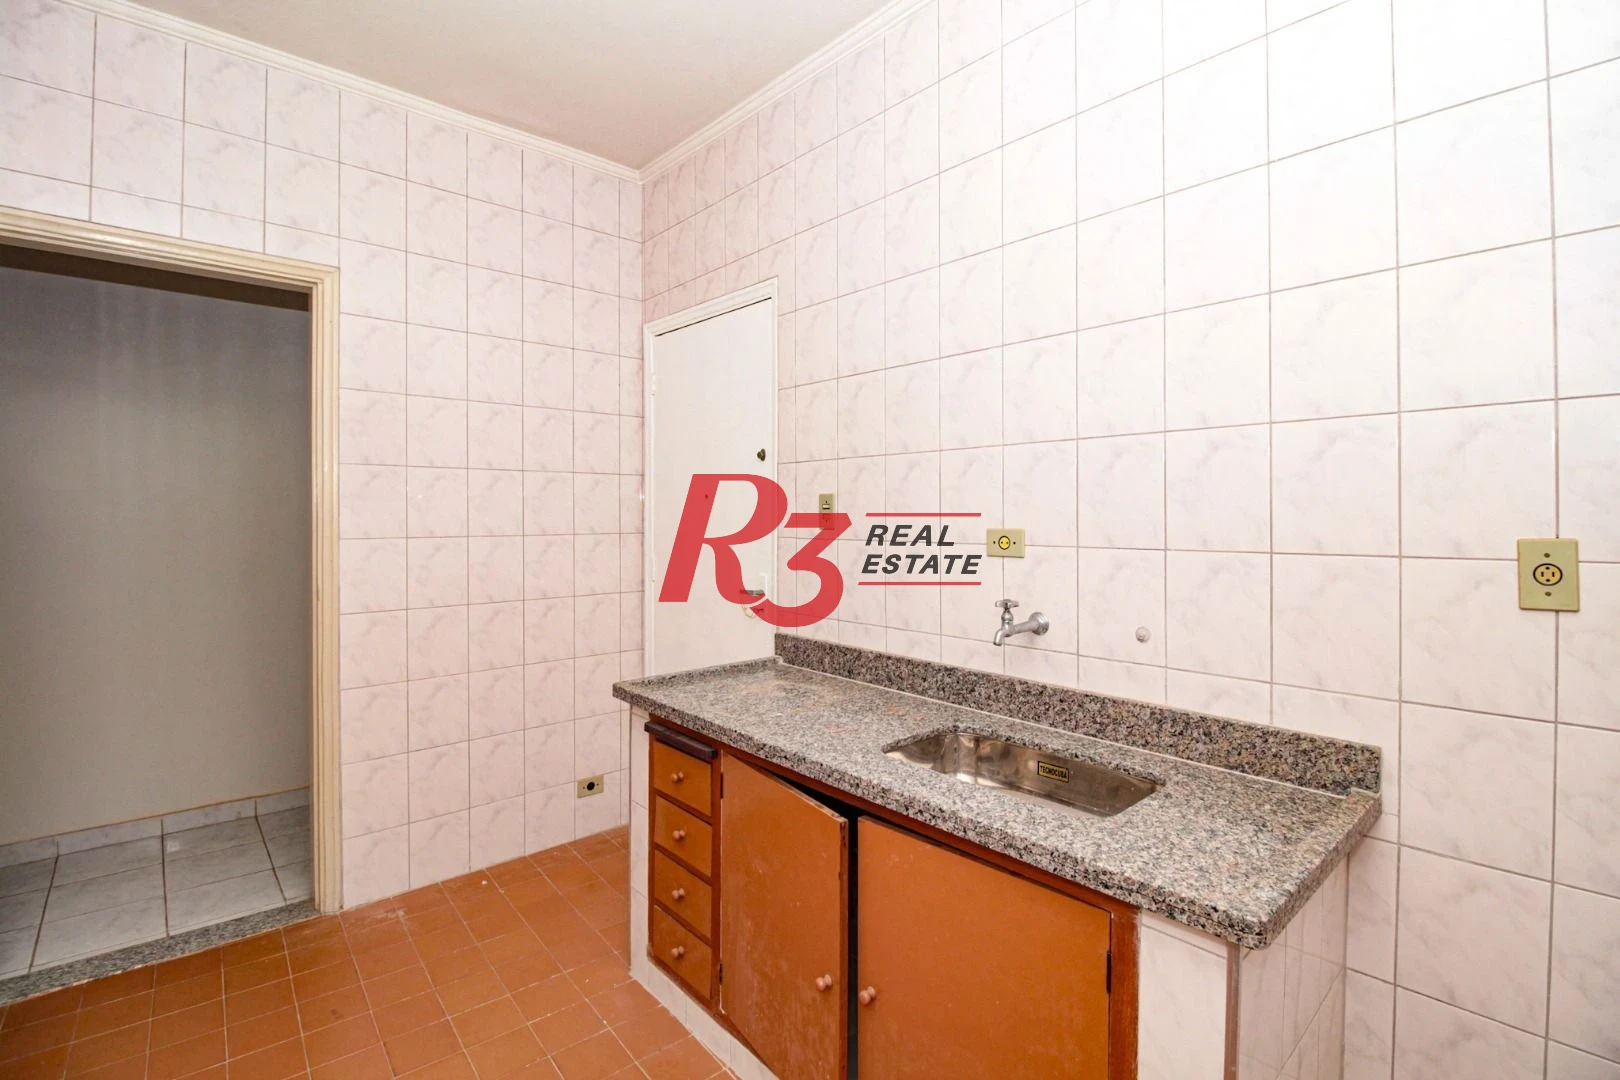 Apartamento a venda, 86 m², 2 dormitórios, 1 vaga, Encruzilhada, Santos SP